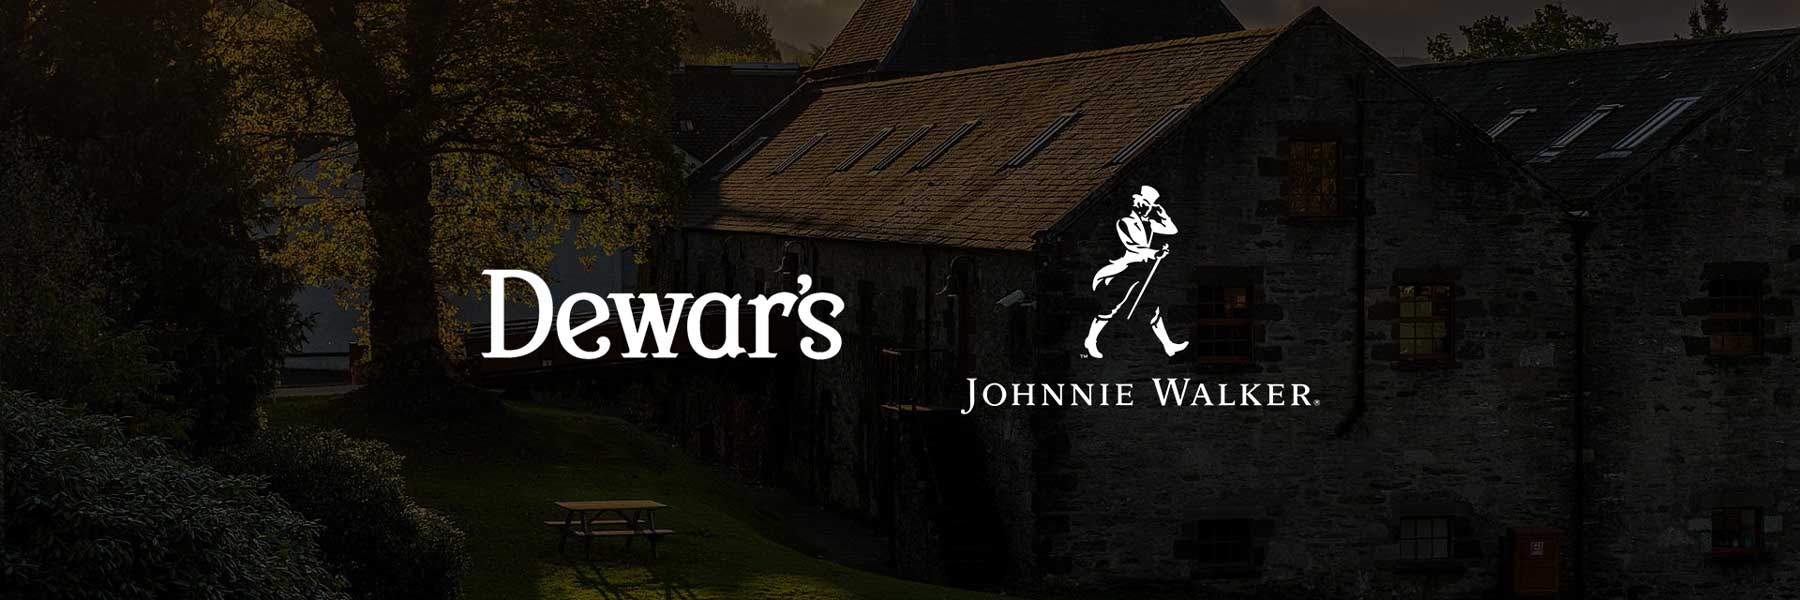 Dewars vs Johnnie Walker